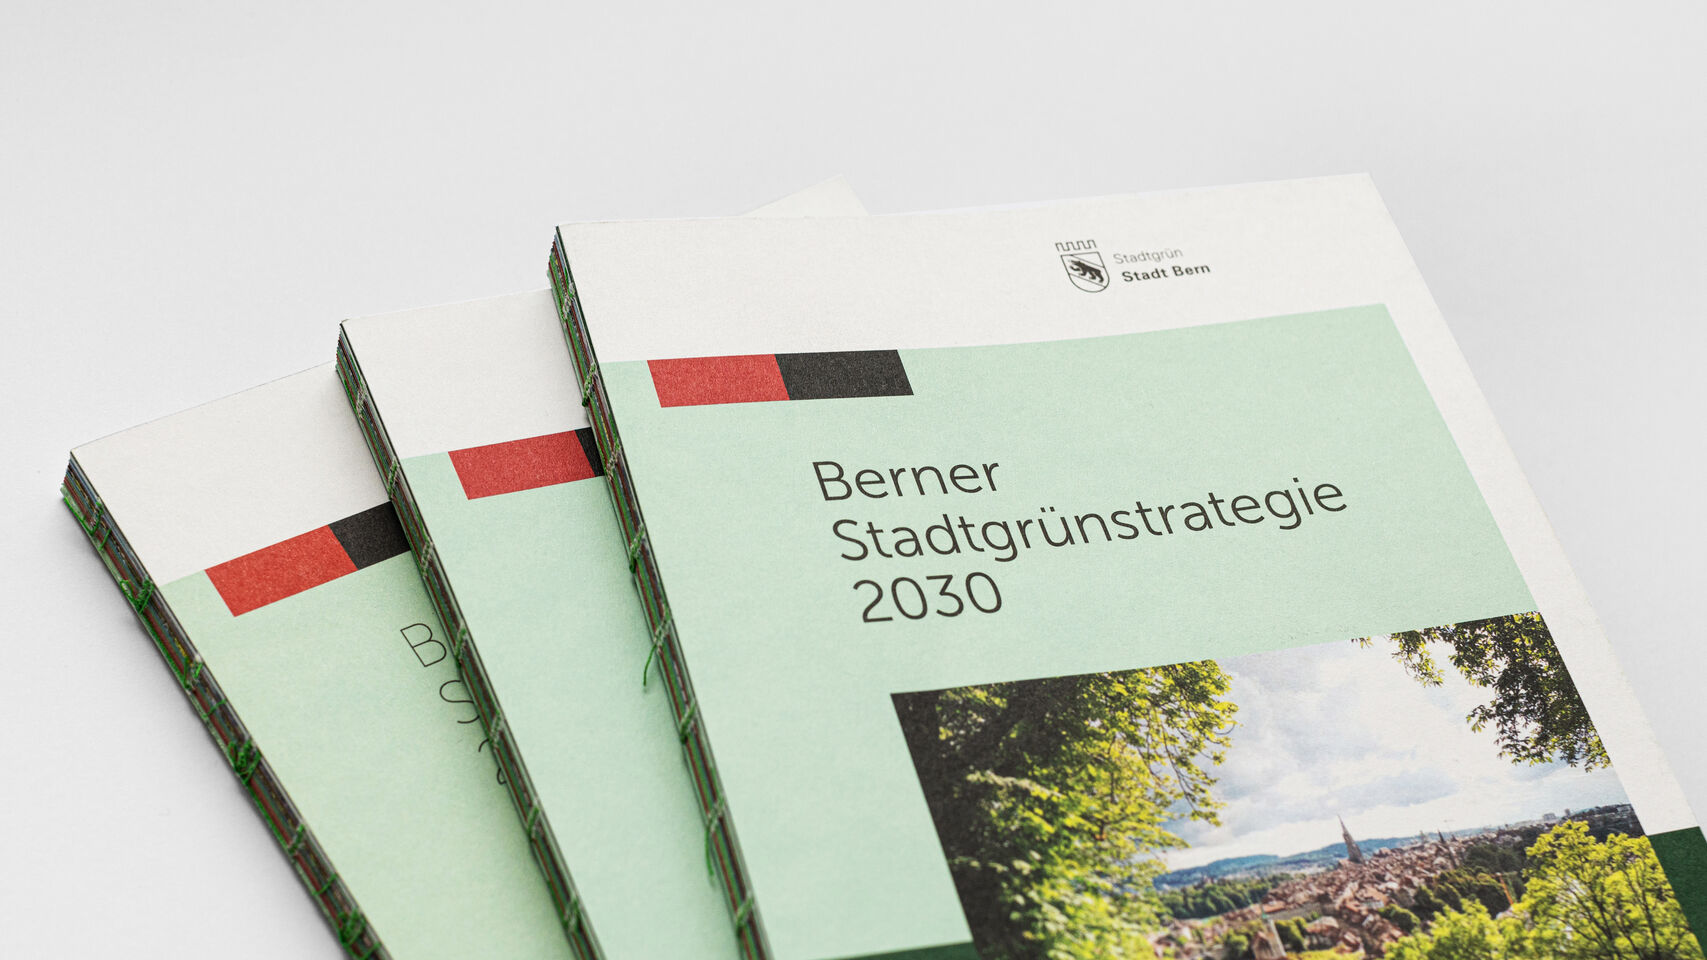 «Stadtgrün Bern – Broschüre Stadtgrünstrategie geschlossen und offen»